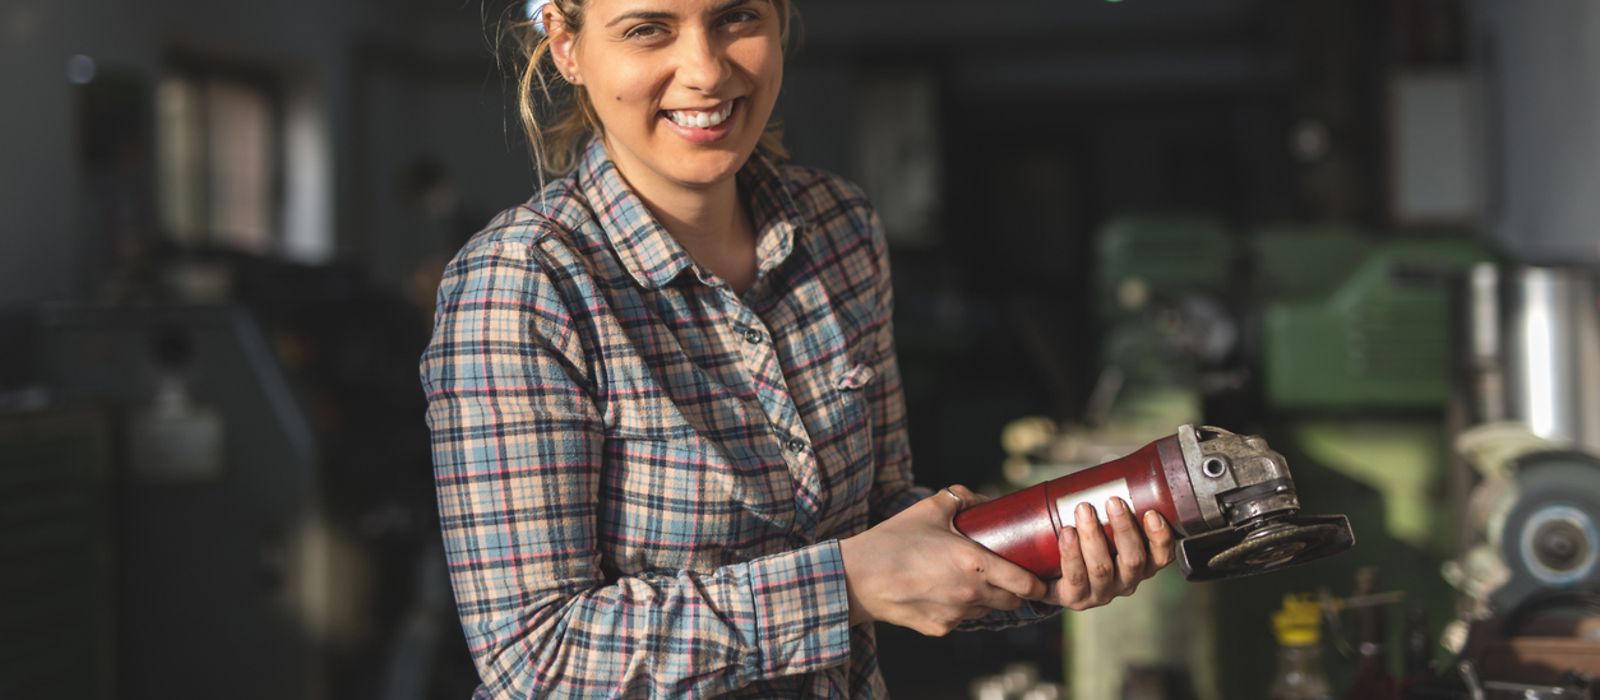 Junge Frau hält ein Werkzeug in der Hand und lächelt